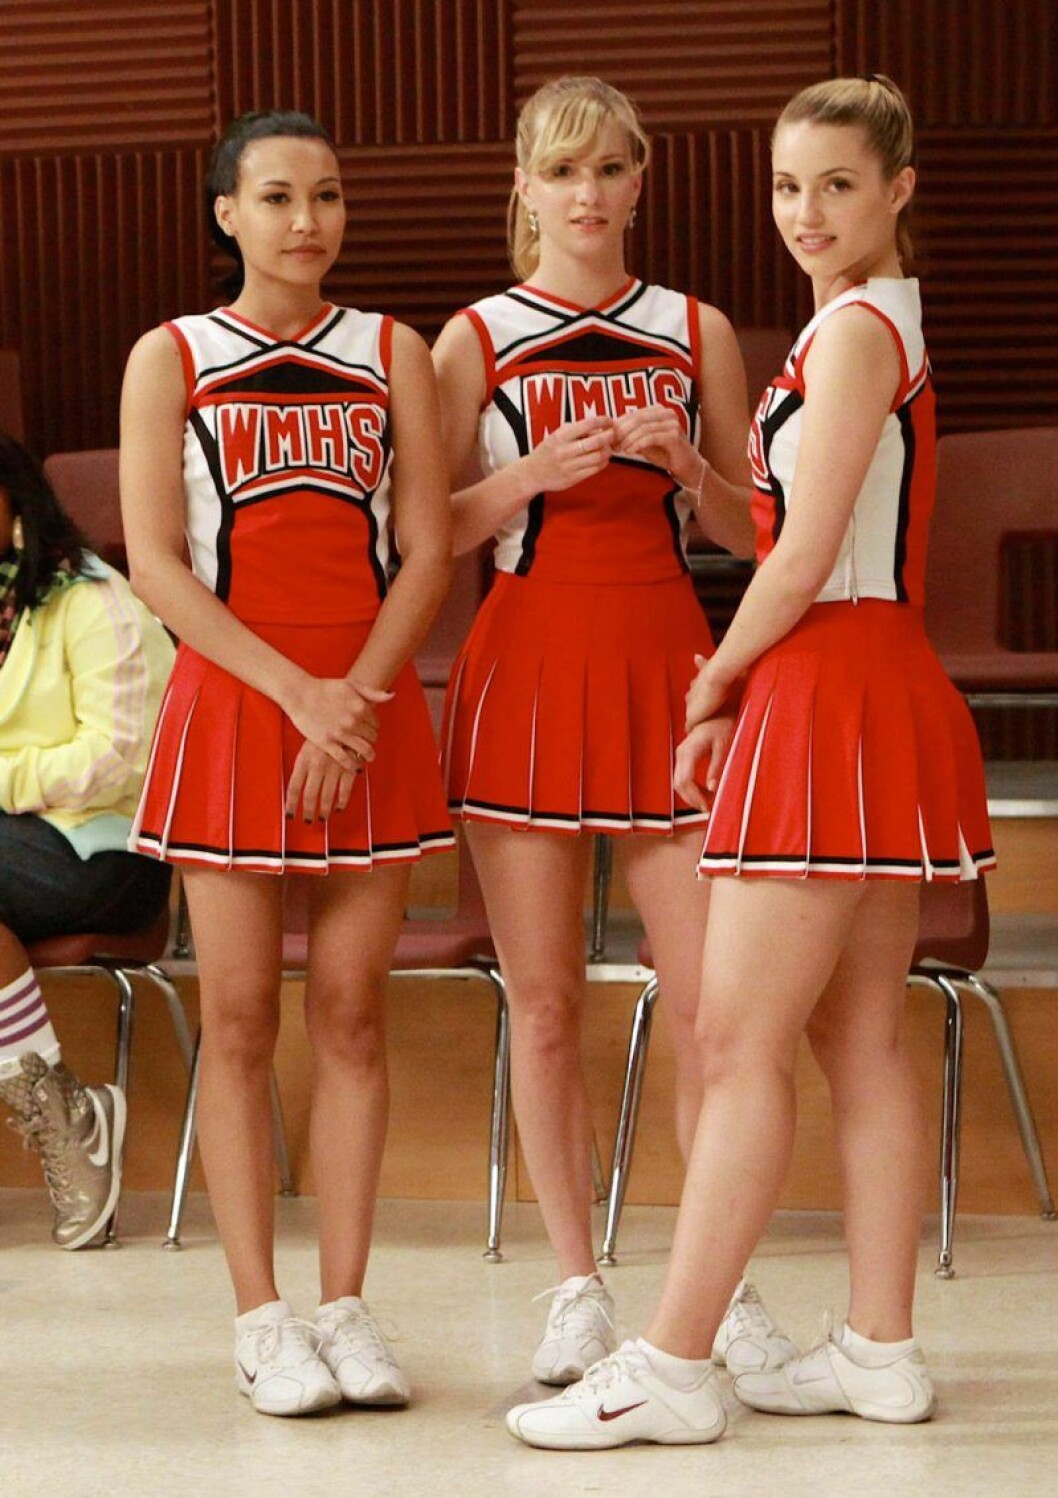 Santana, Brittany och Quinn i Glee har röda och vita cheerleading dräkter